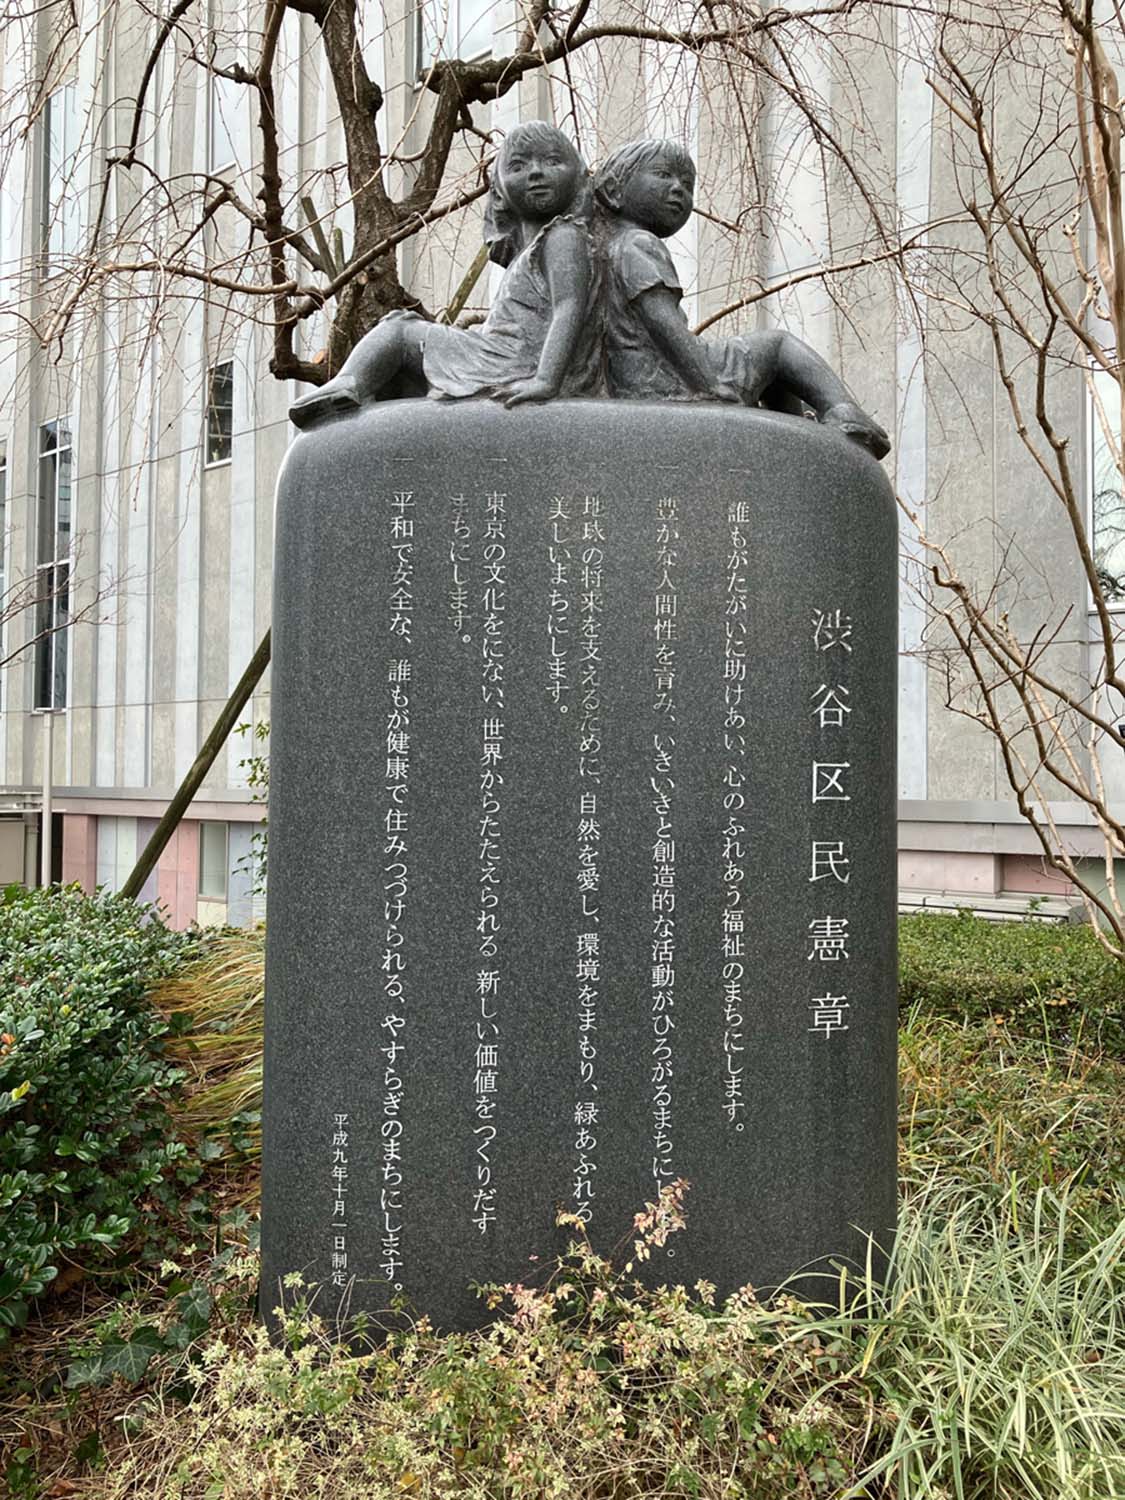 かわいらしい子供たちが彫刻された渋谷区民憲章の石碑。かなり凝ったつくりである（渋谷公会堂）。